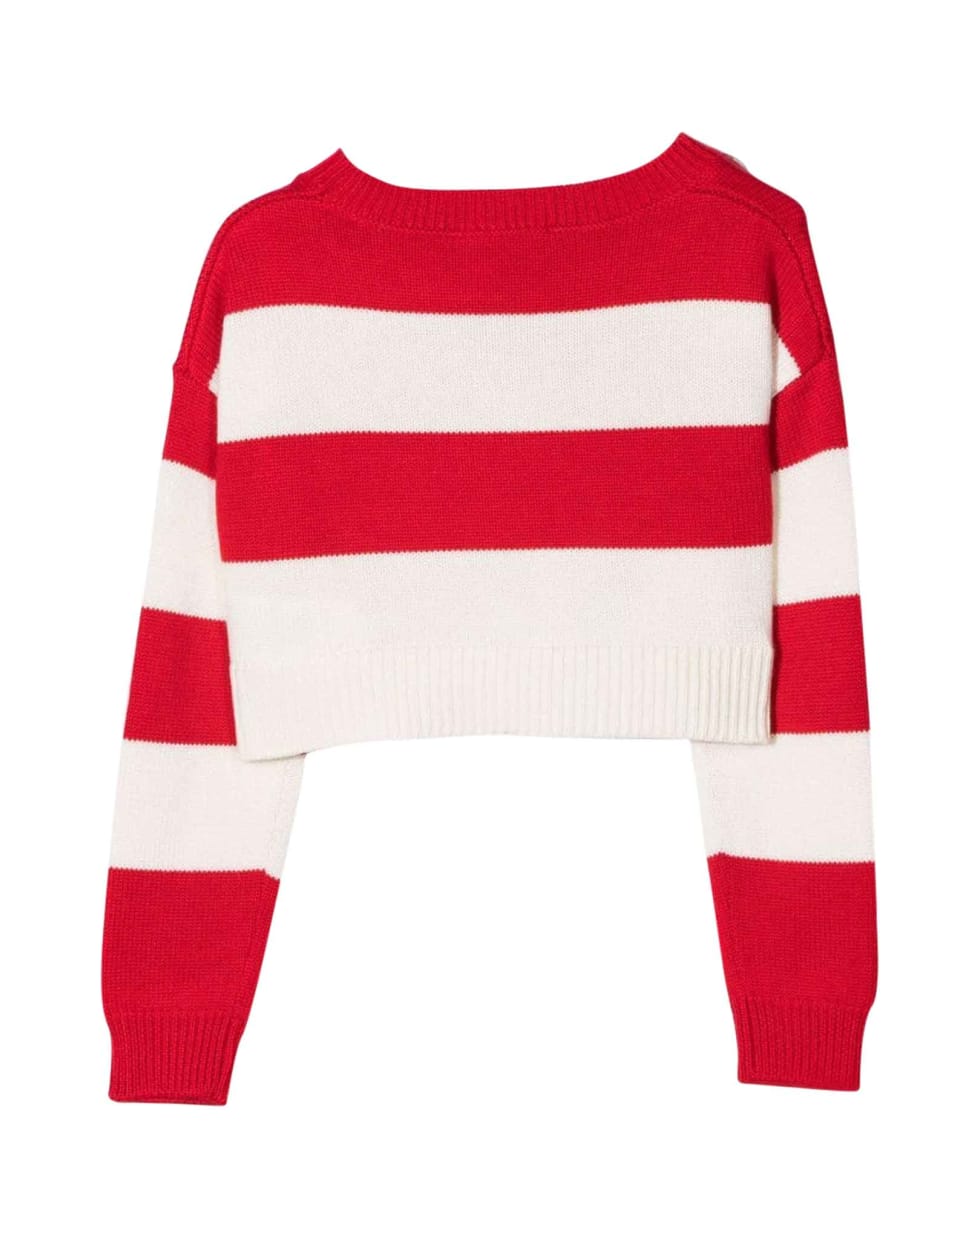 Monnalisa Girl Striped Sweater - Panna